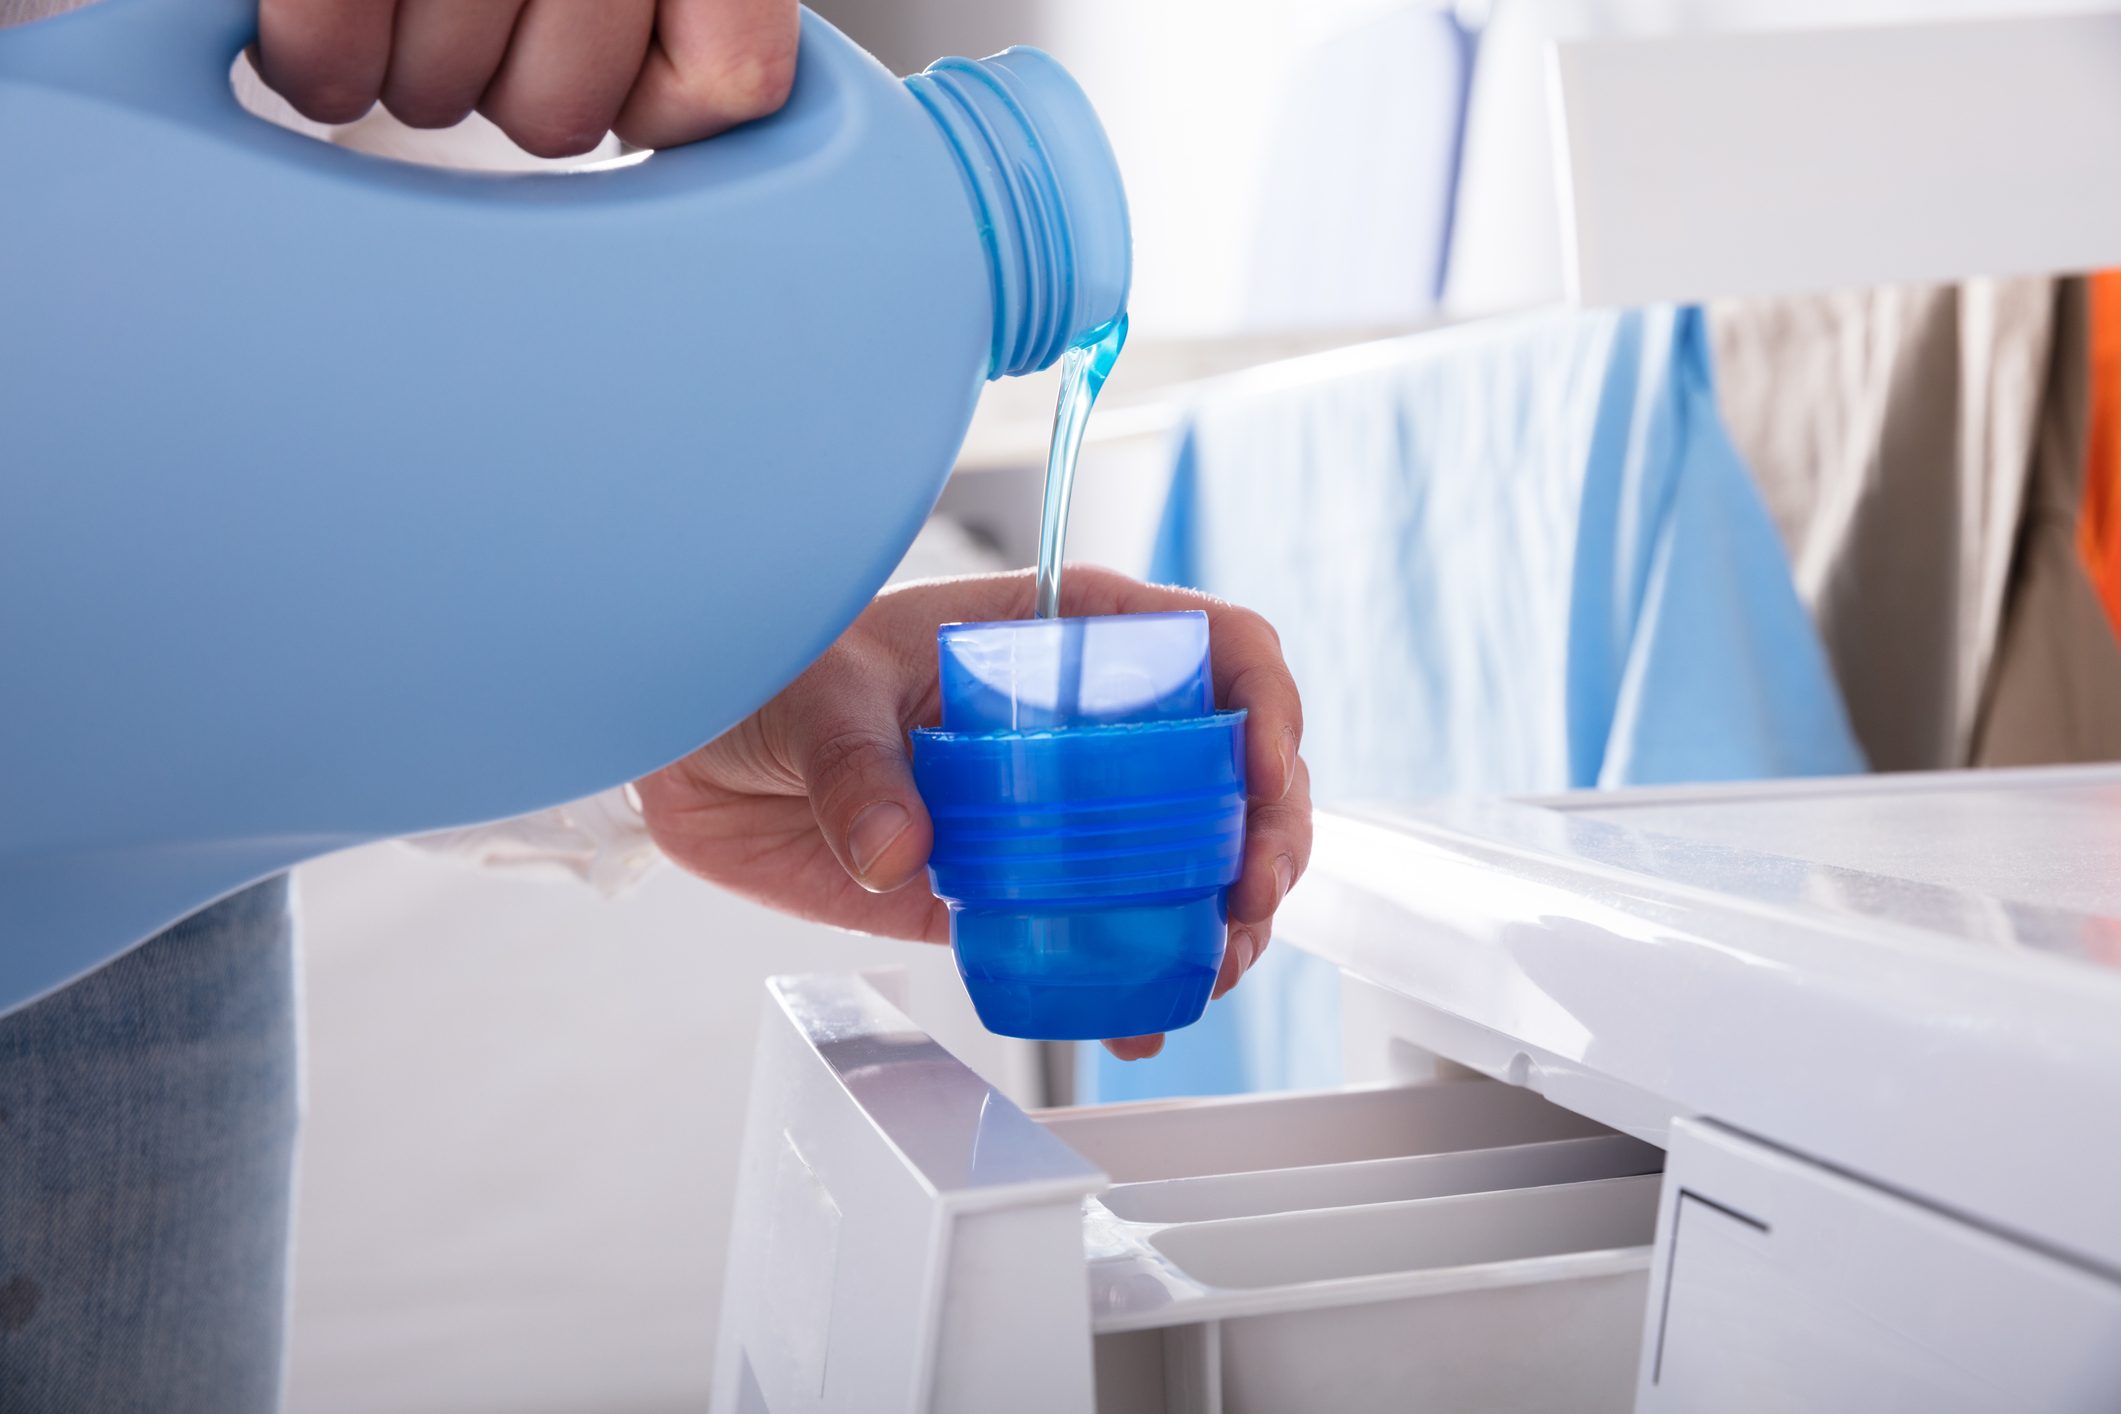 Detergente líquido, en polvo o en cápsulas: ¿cuál es mejor?